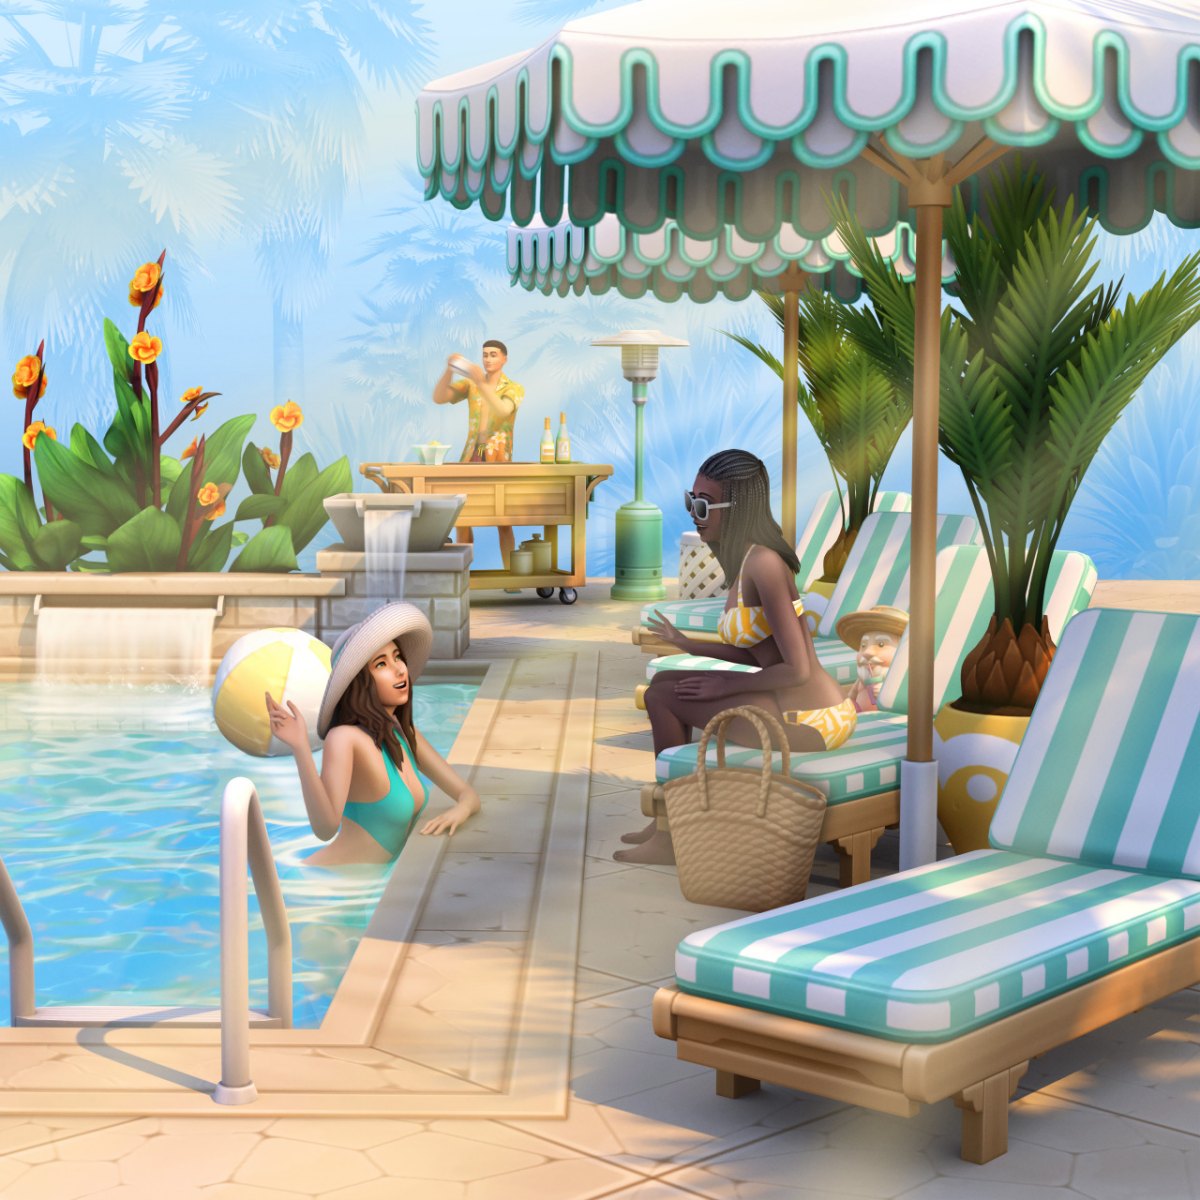 Baixe de Graça o The Sims 4 Diversão na Piscina - CC Pack